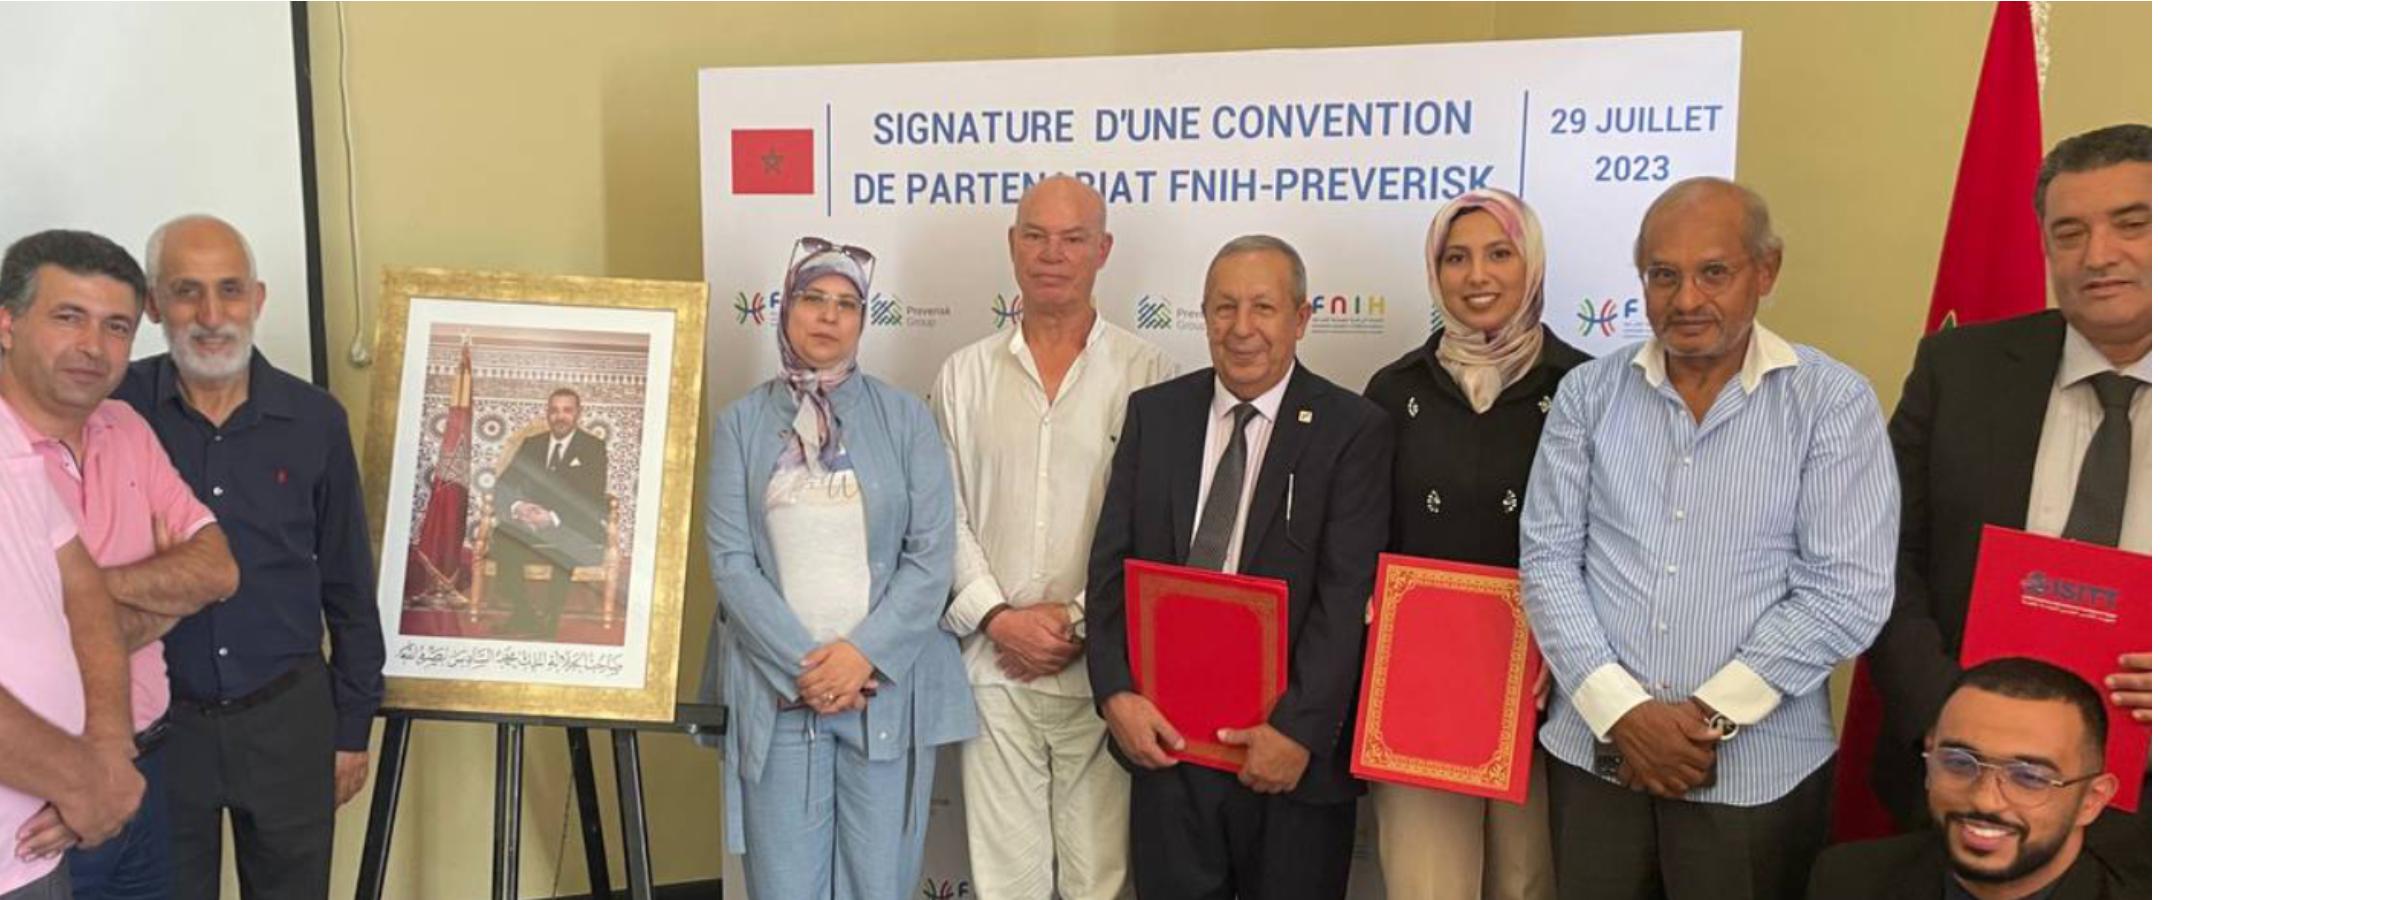 Img. principal: Preverisk y FNIH se unen para fortalecer la calidad y seguridad en la industria hotelera en Marruecos 